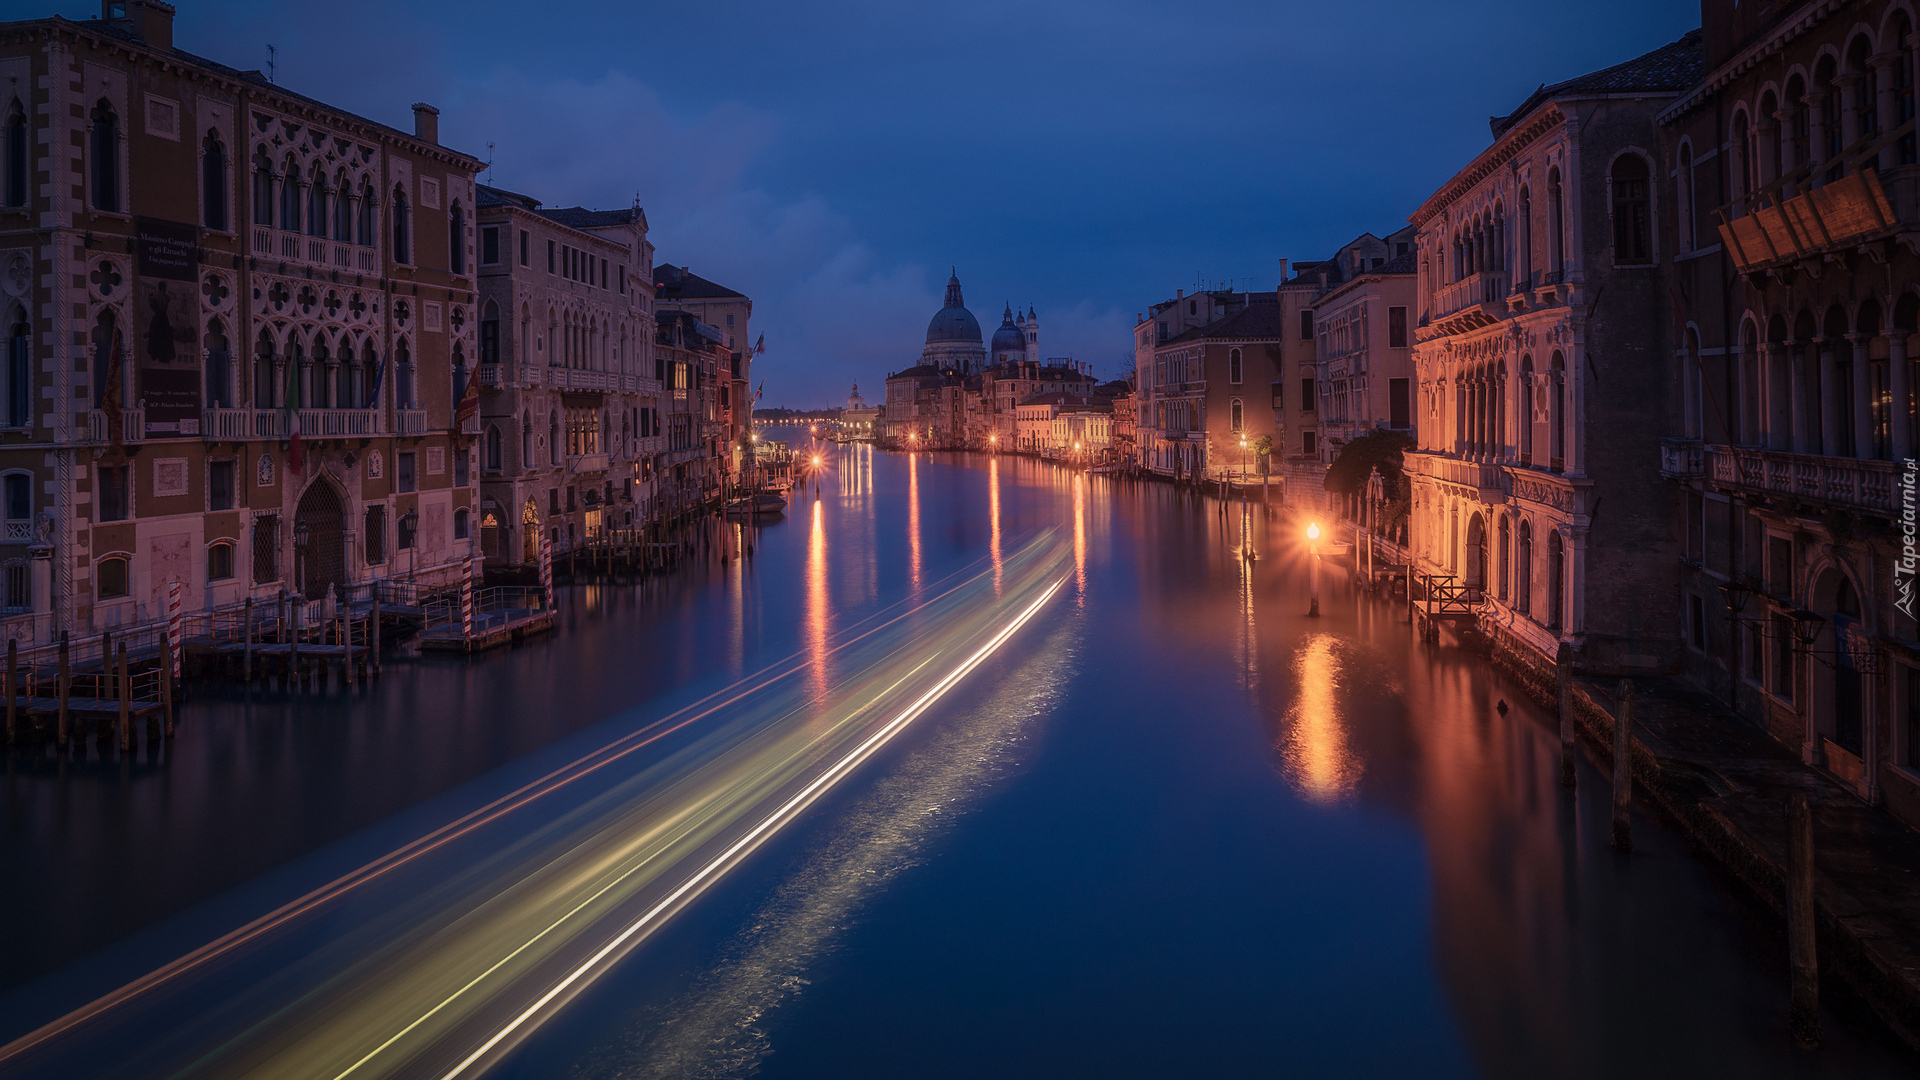 Canal Grande, Kanał, Noc, Oświetlone, Domy, Wenecja, Włochy